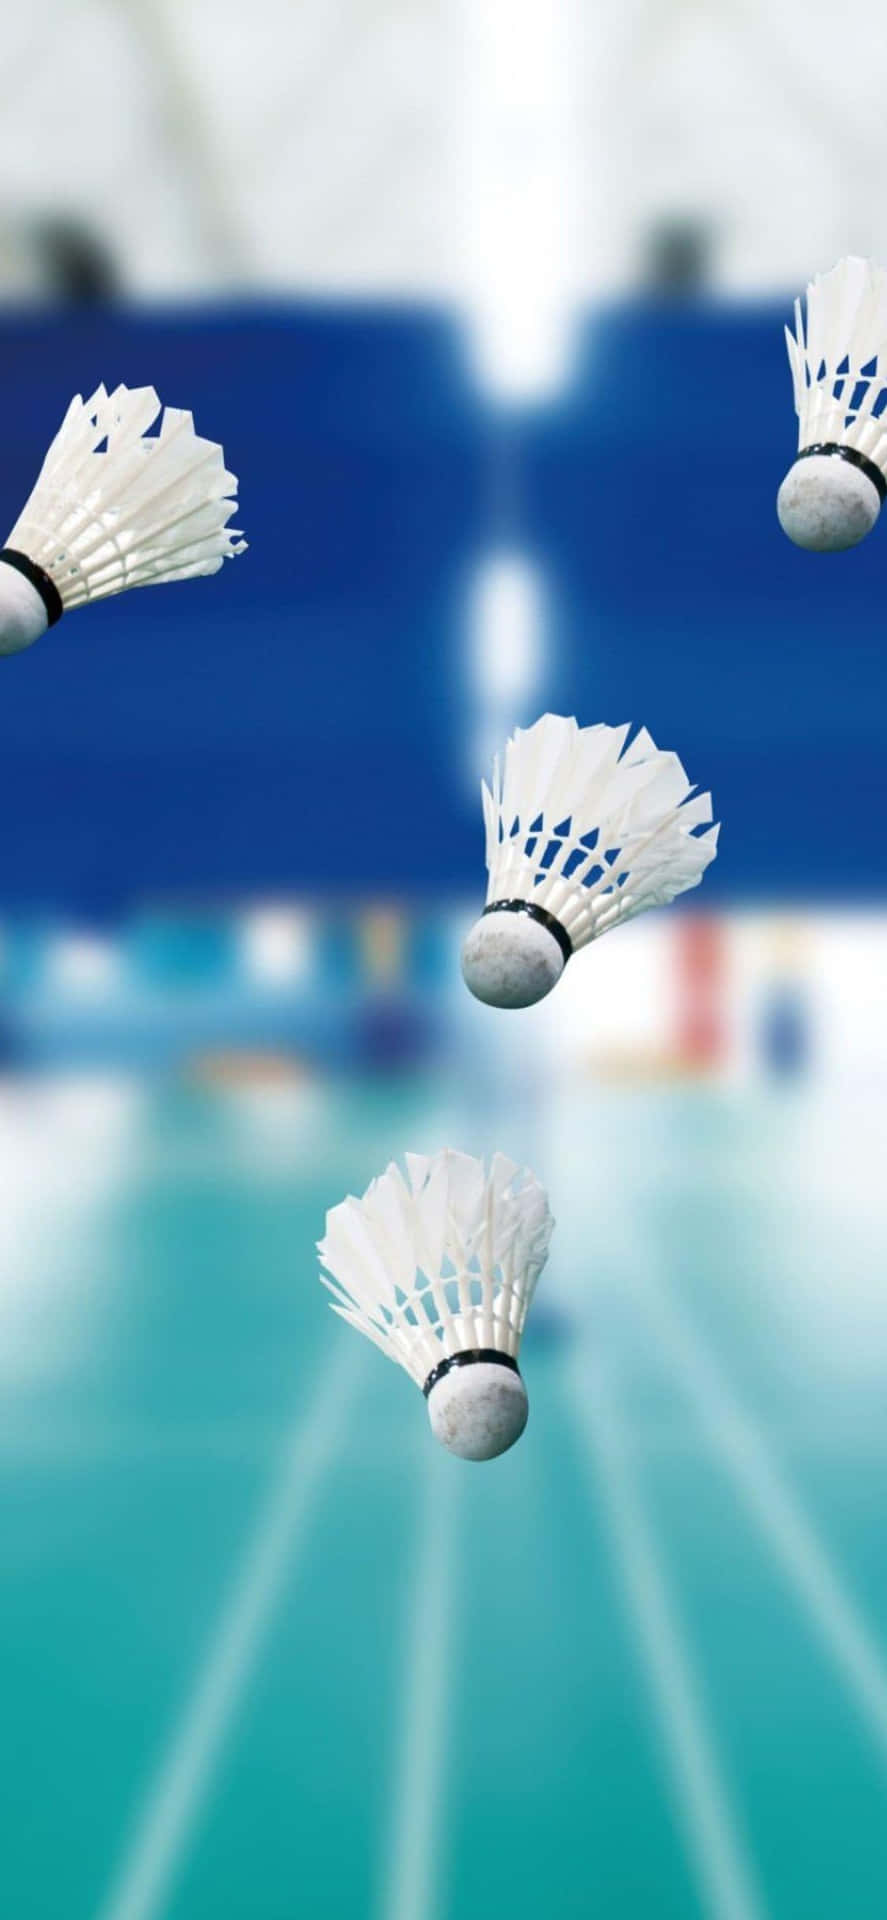 Iphone Xs Badminton Background 1125 X 2436